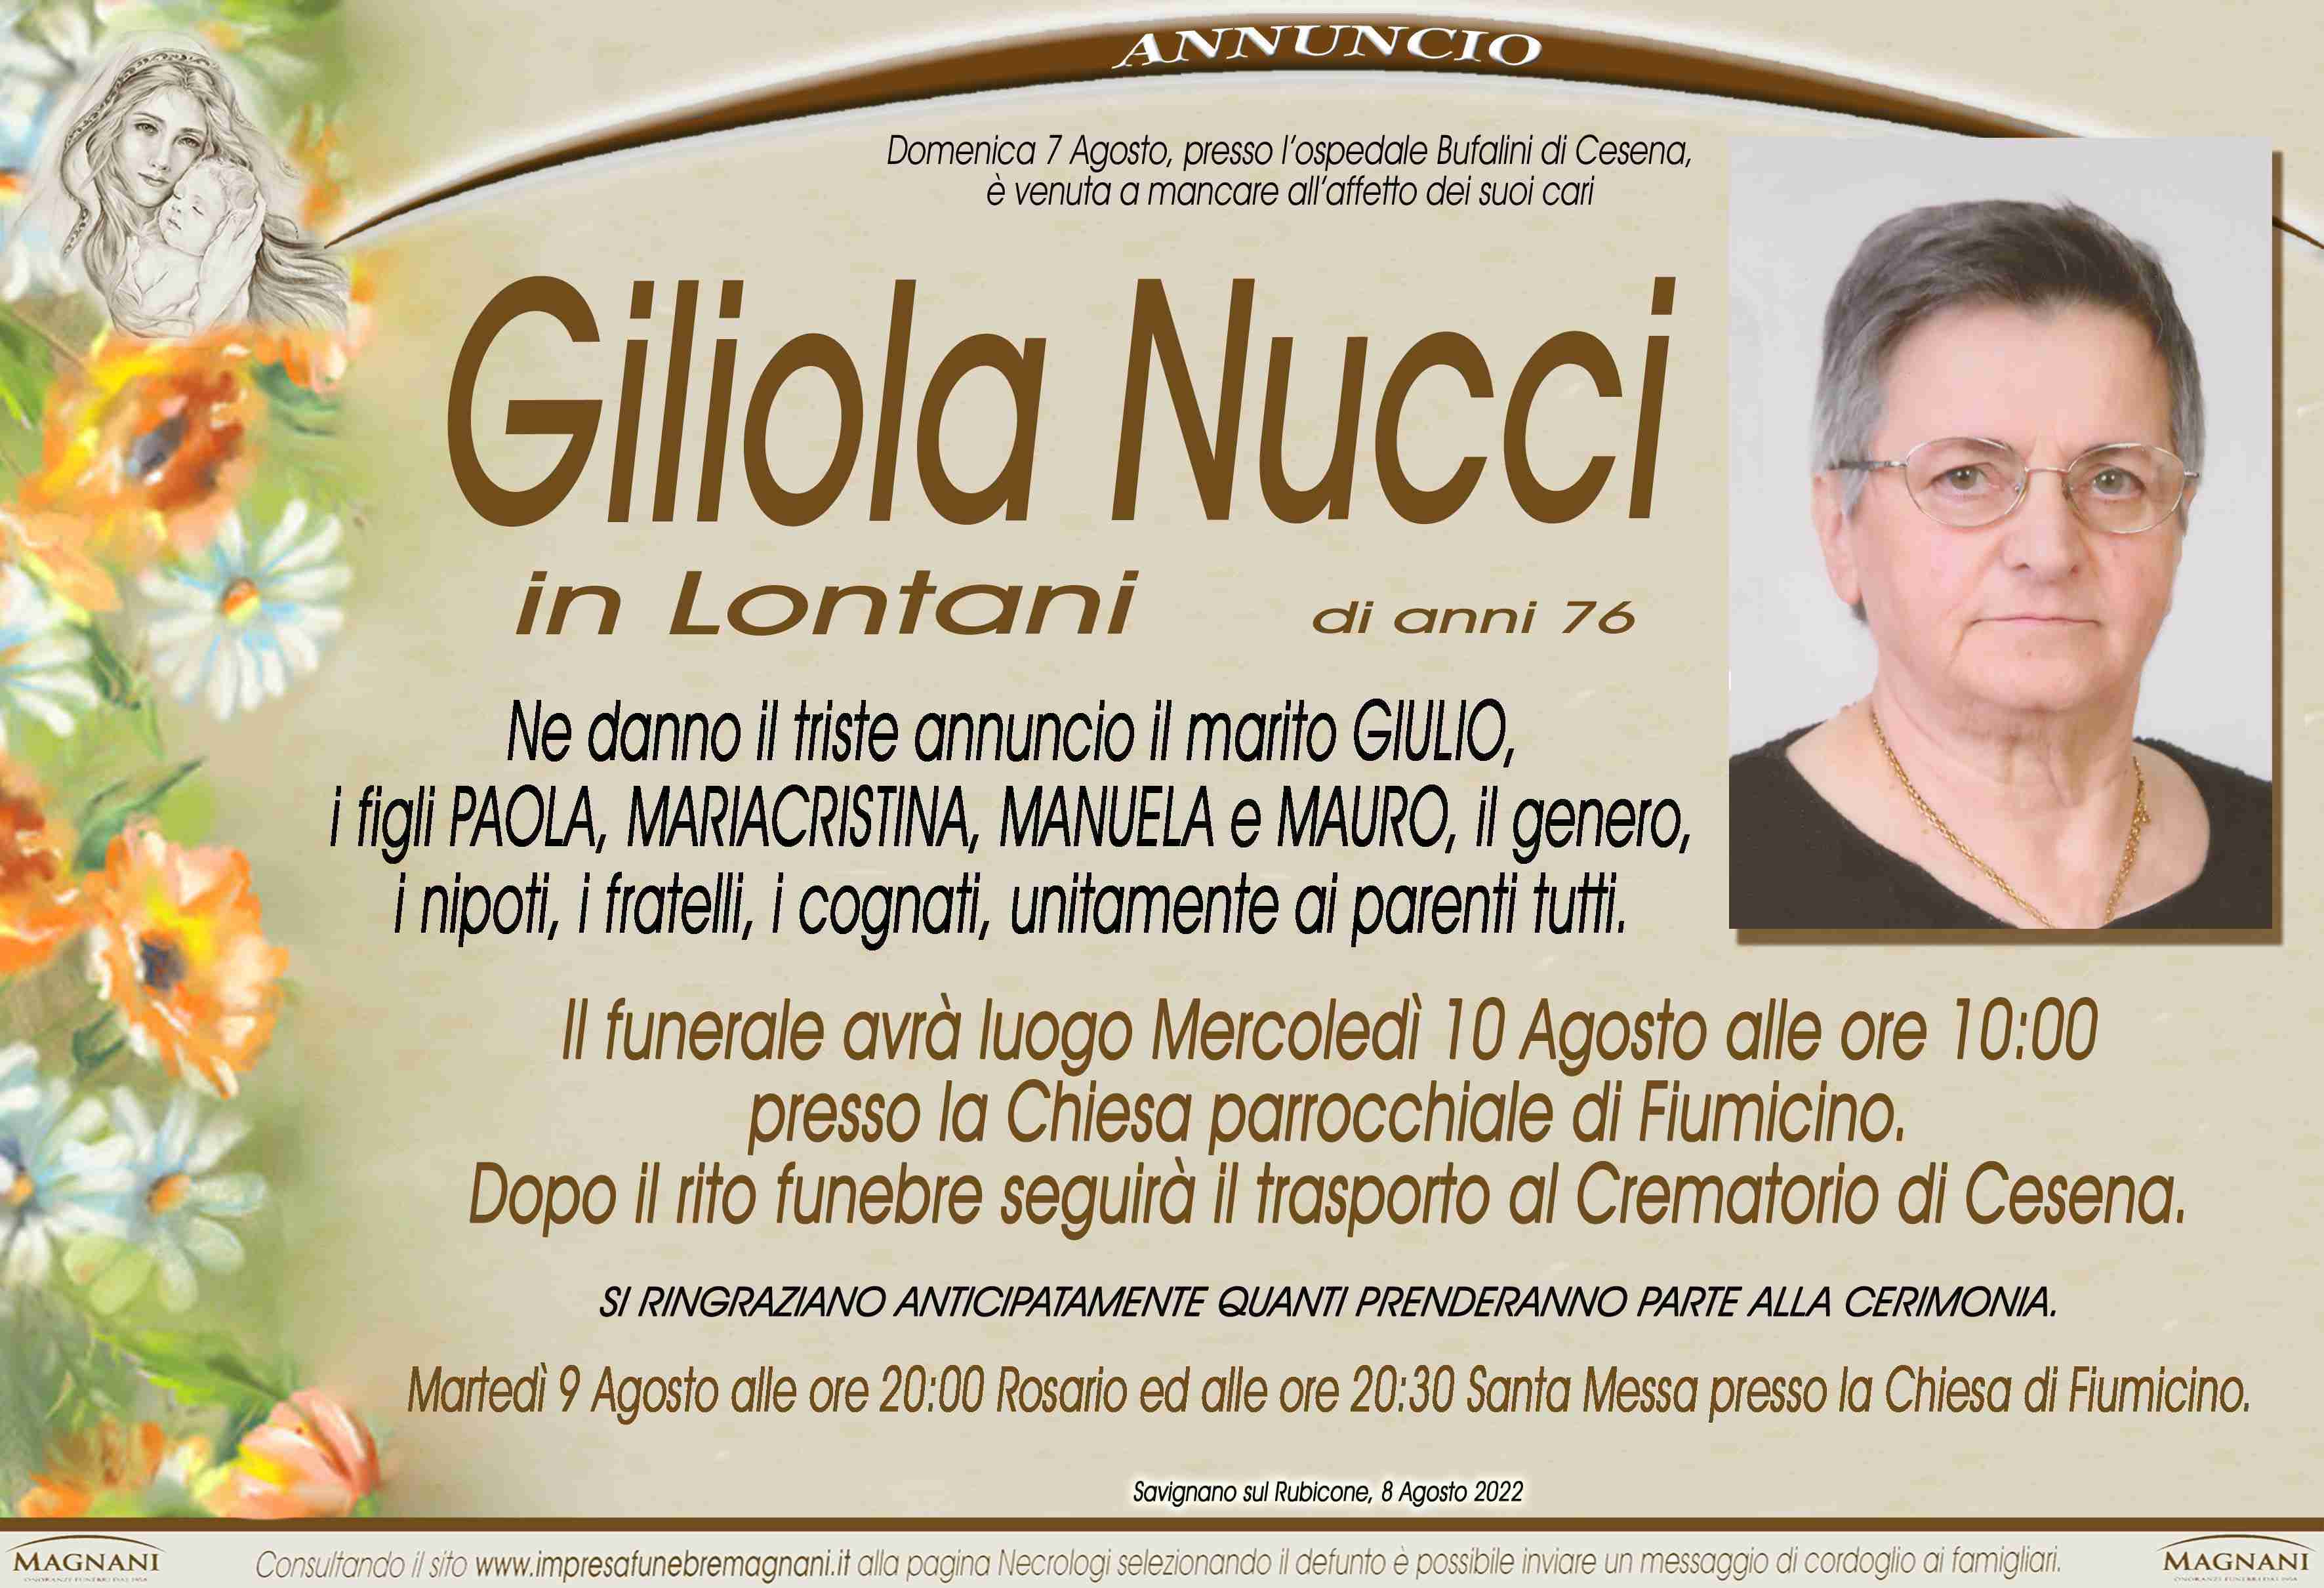 Giliola Nucci